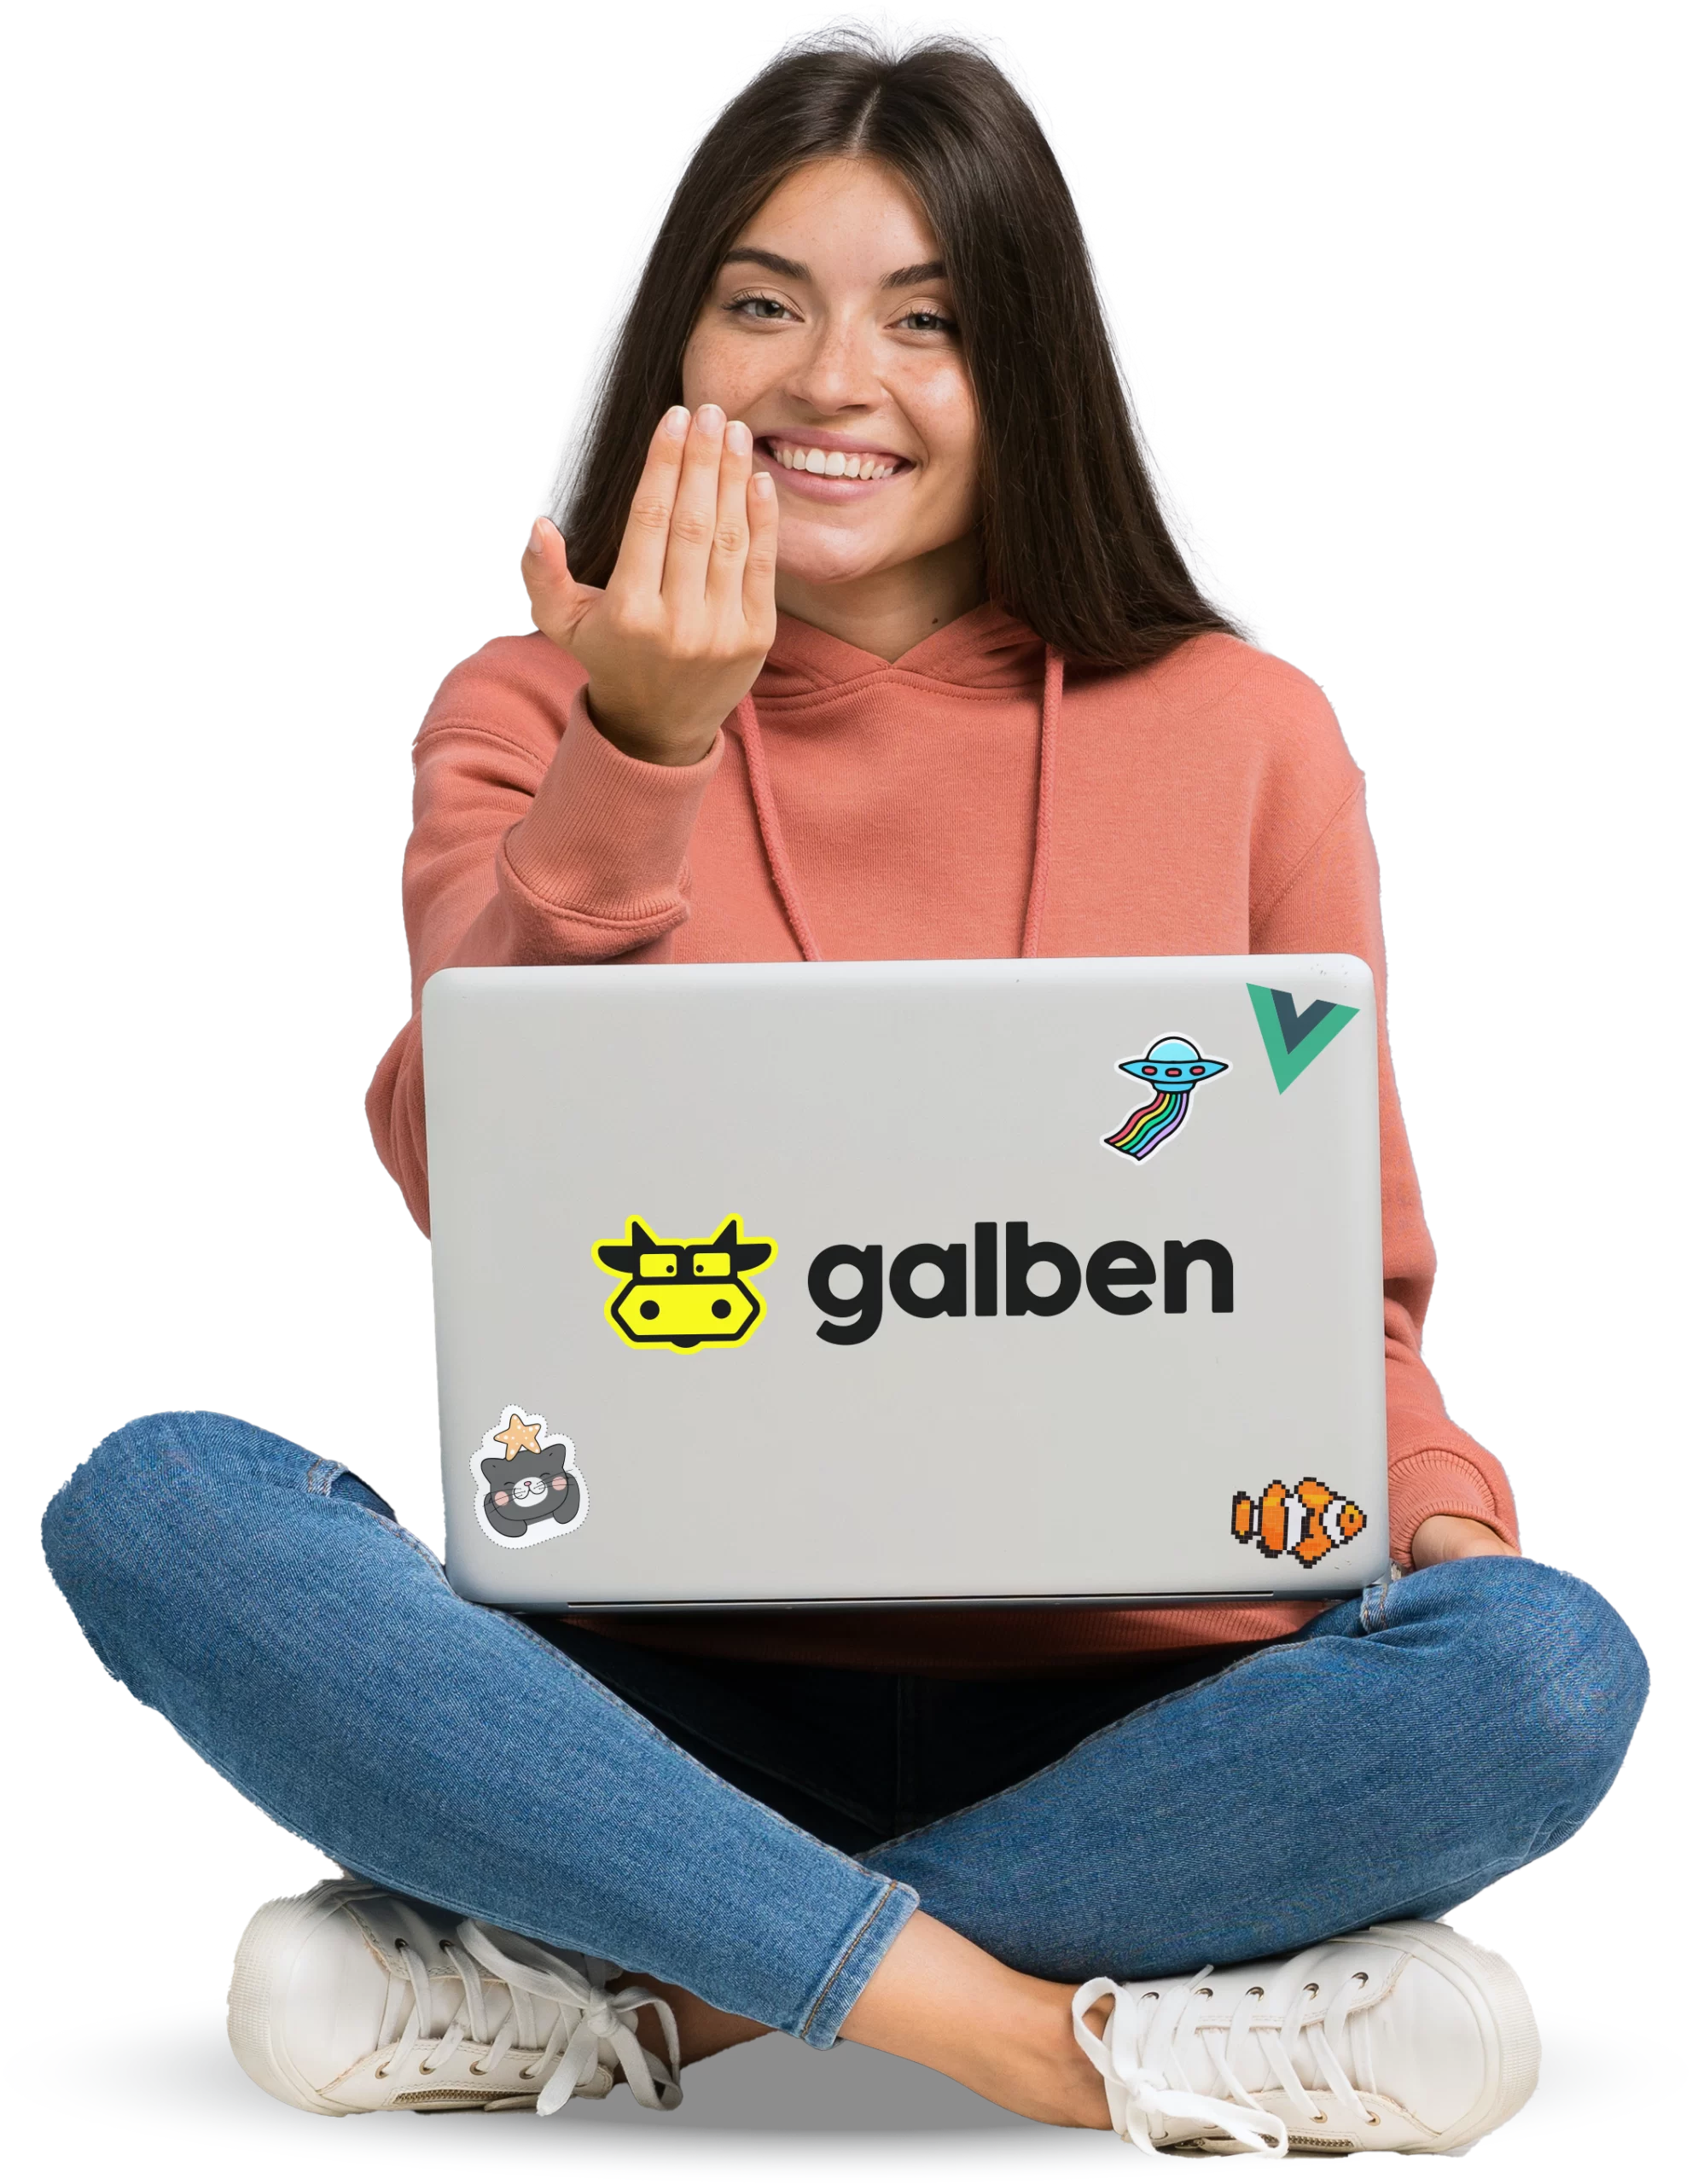 Imagem ilustrativa de uma jovem mulher com um laptop convidando os visitantes do site a conhecerem a agência Galben